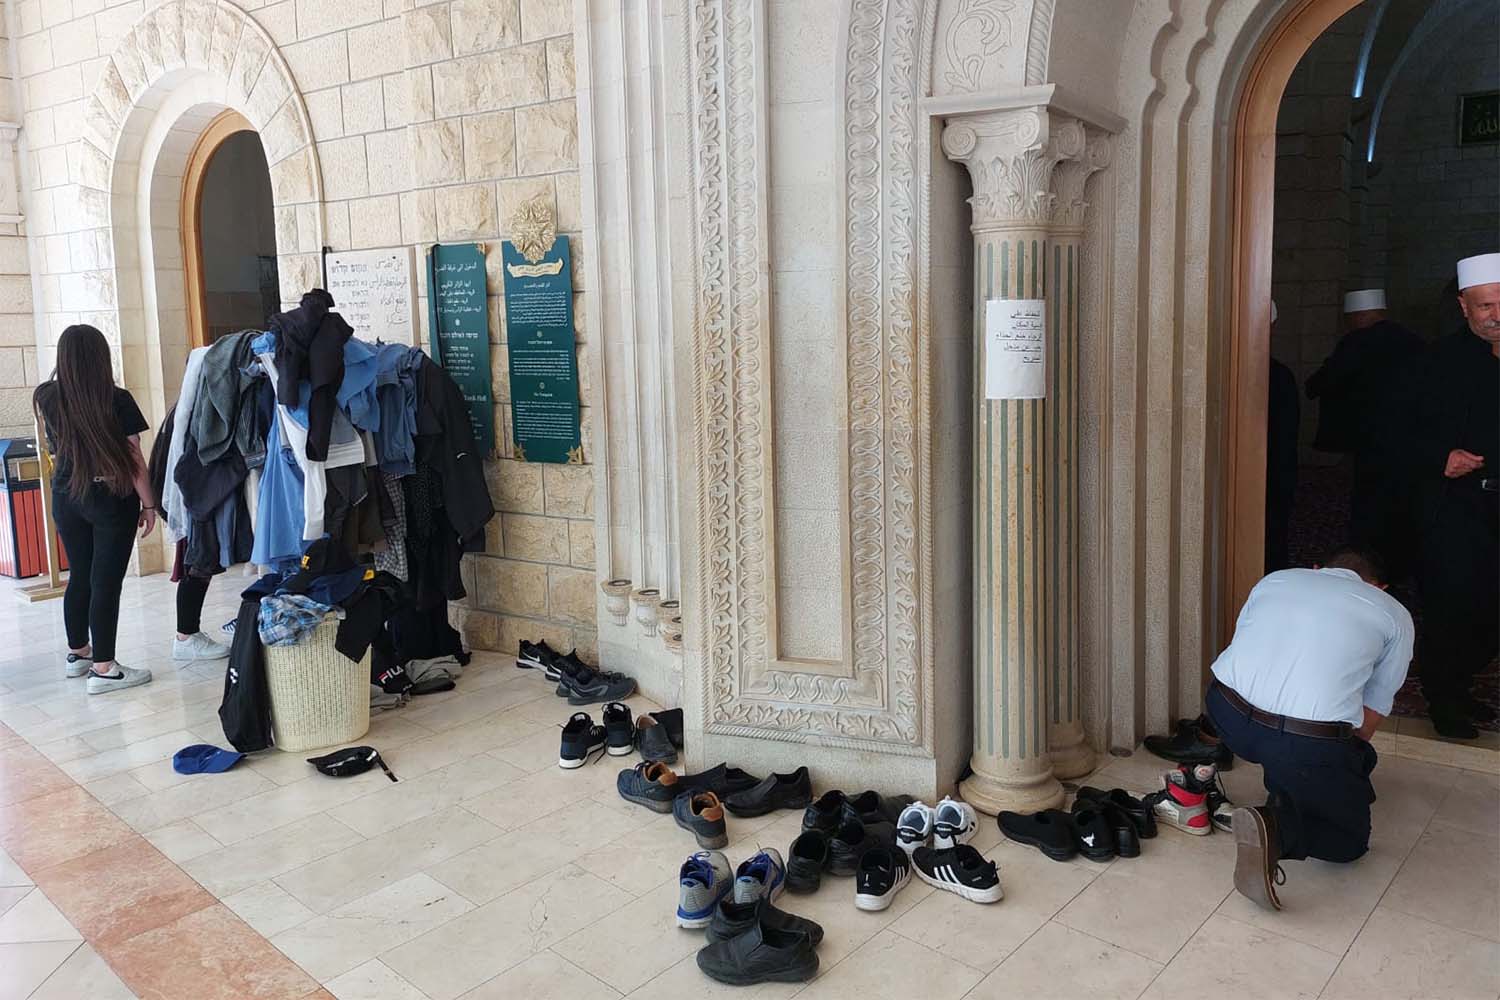 يخلعون الأحذية قبل الدخول إلى ضريح النبي شعيب (تصوير: مور هوفرط)